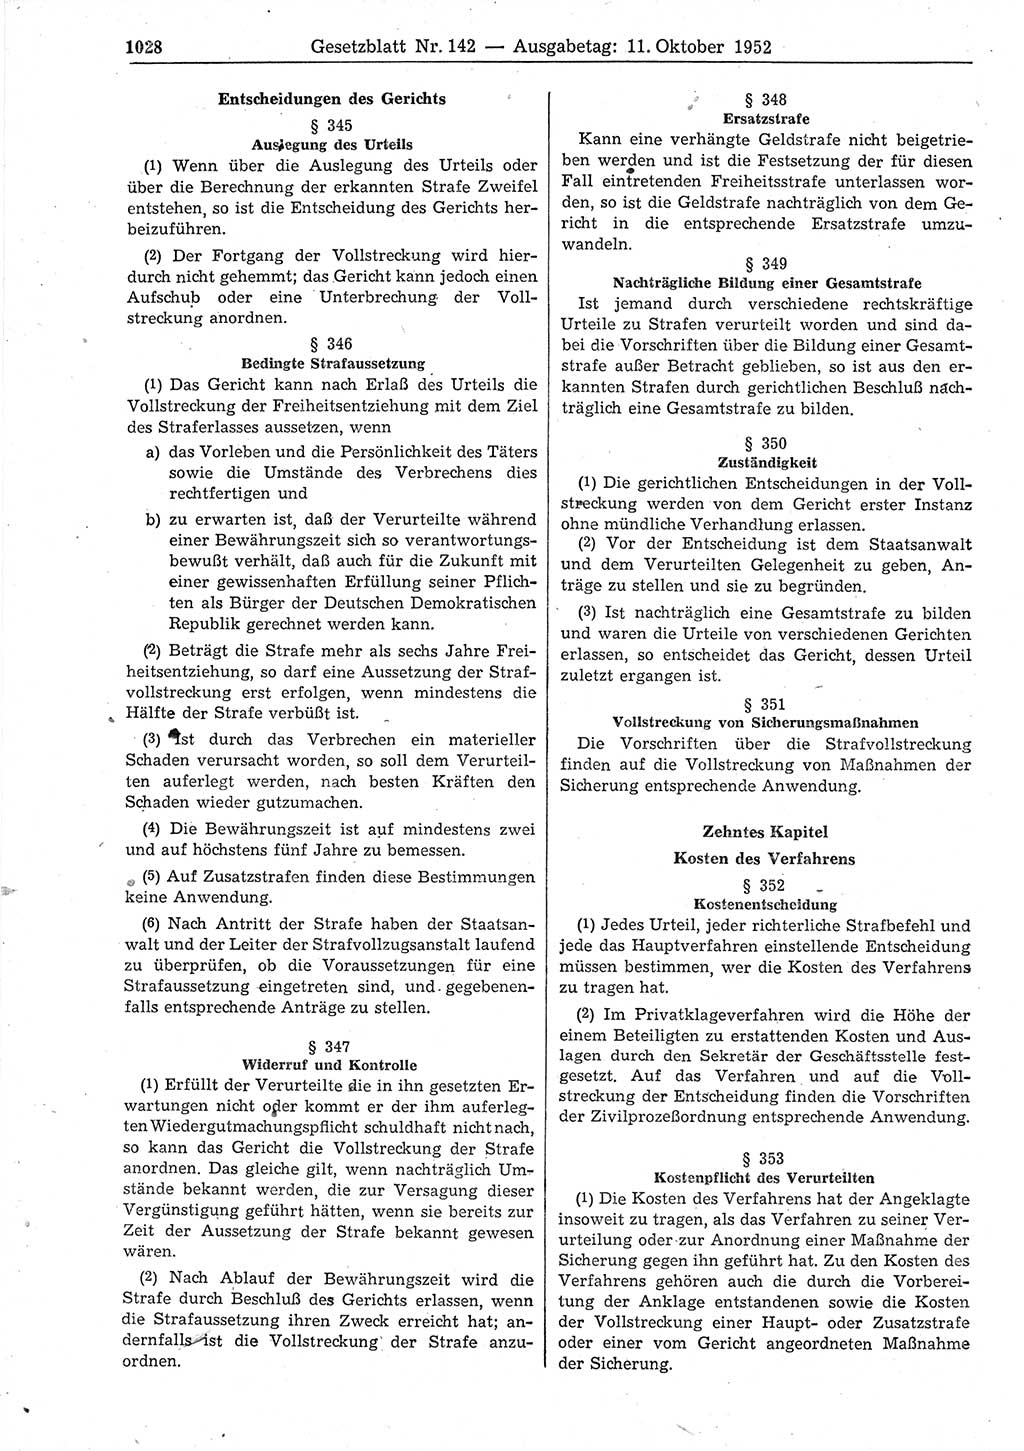 Gesetzblatt (GBl.) der Deutschen Demokratischen Republik (DDR) 1952, Seite 1028 (GBl. DDR 1952, S. 1028)